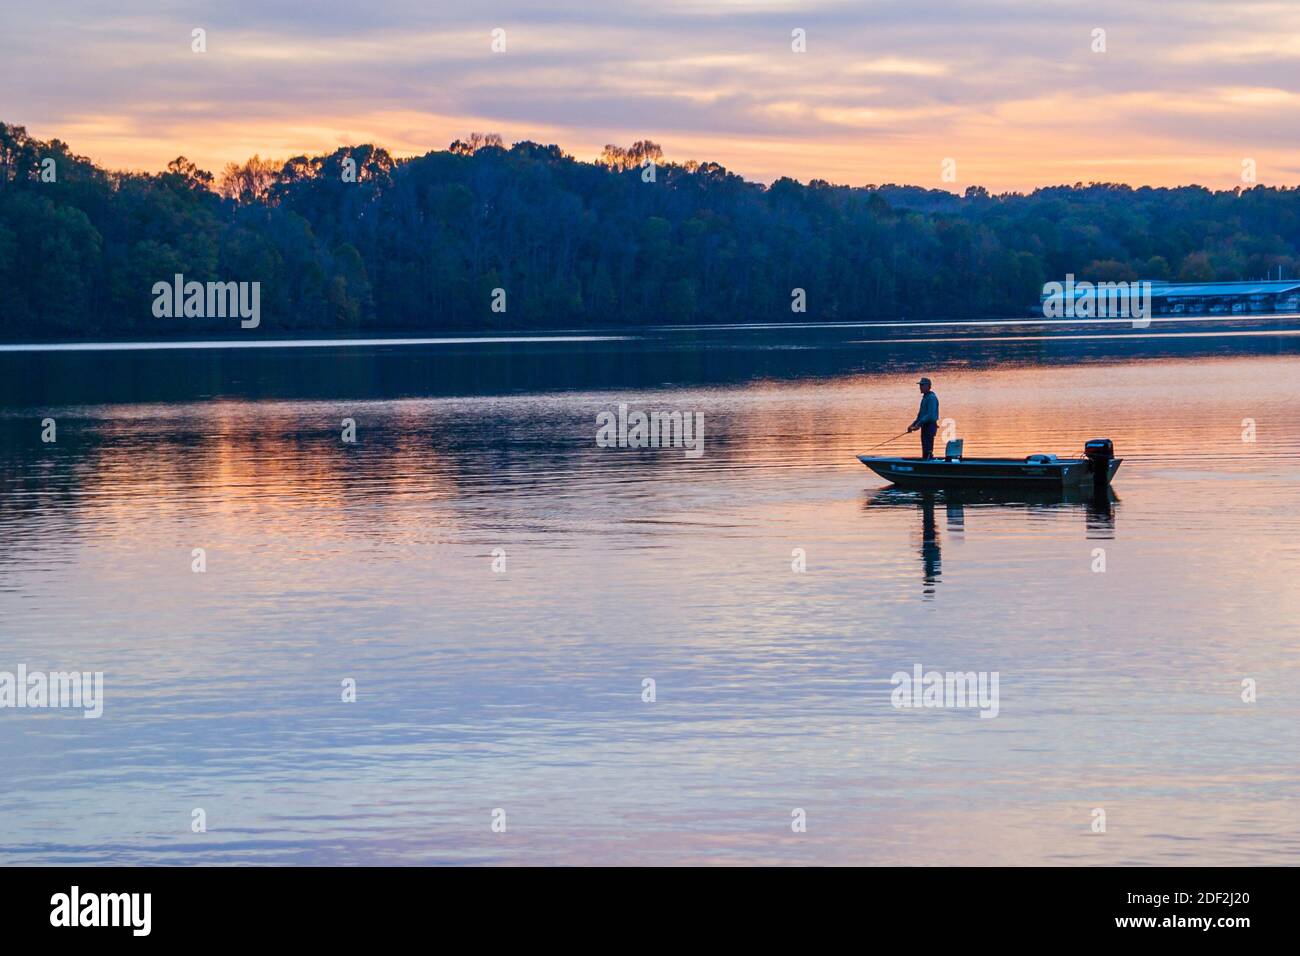 Alabama Rogersville Joe Wheeler state Park, First Creek Tennessee River, la sera sera sera, pesca al crepuscolo, uomo di pesca silhouette Foto Stock